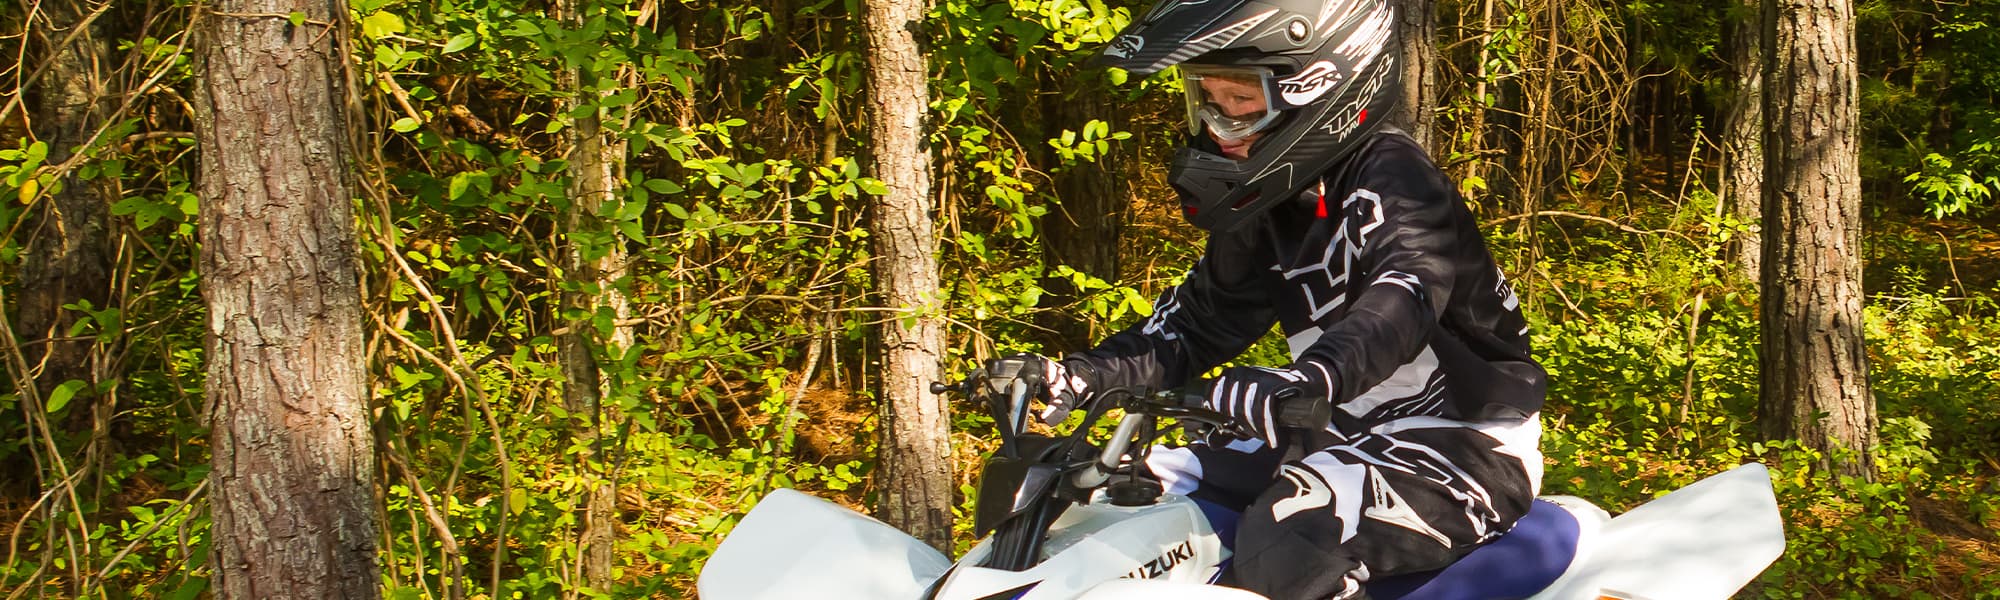 ATV Riding Pants for Men, Women & Kids